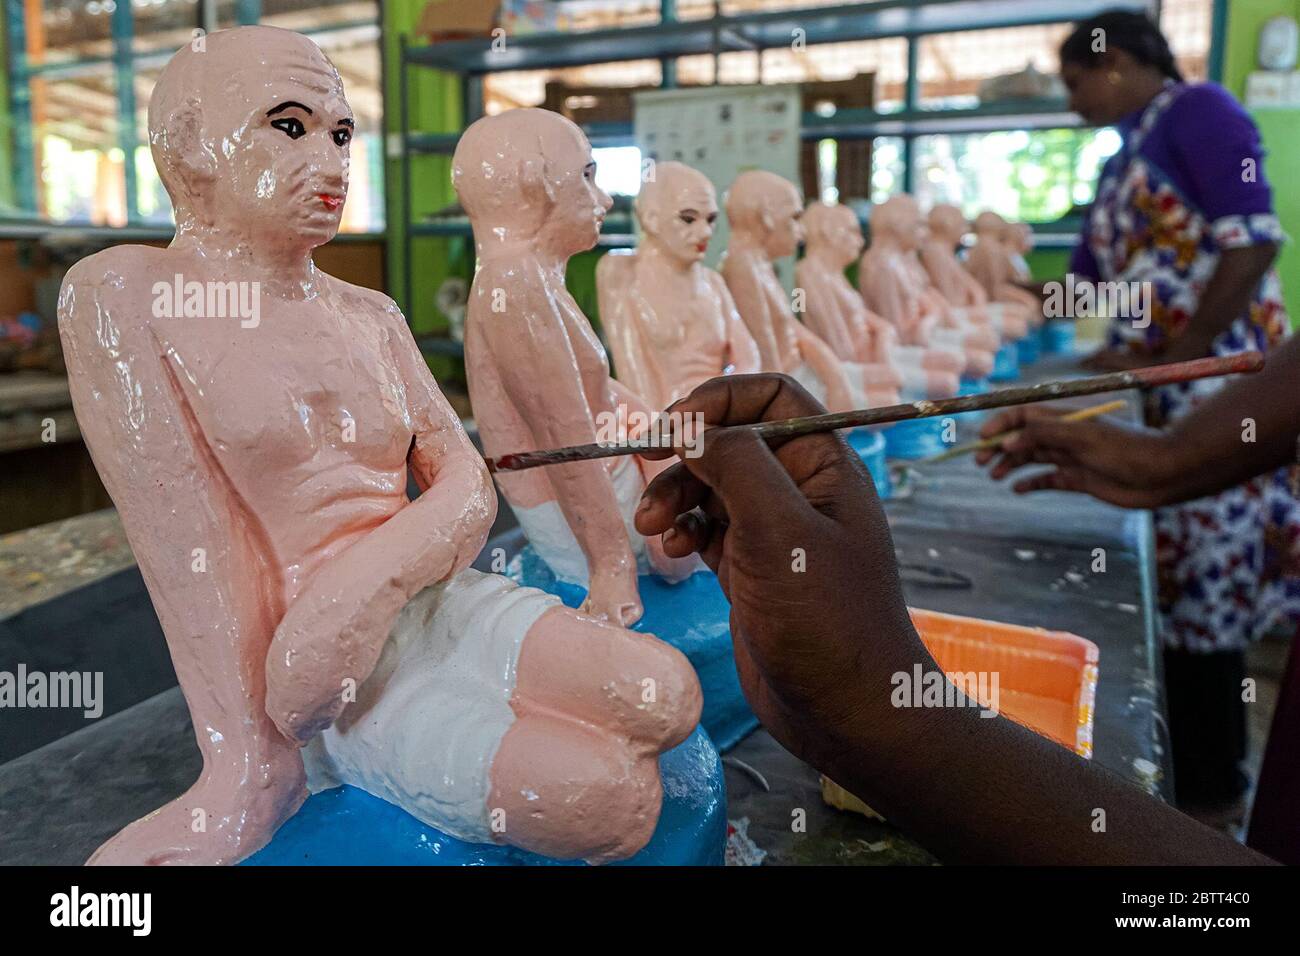 Gli istruttori di un centro di addestramento di ceramica di argilla a Jaffna, Sri Lanka, dipingono statue di argilla di Subramania Bharathiyar, un poeta tamil e leader politico, e Mahatma Gandhi da vendere nei negozi. Dicono che questi articoli sono popolari con i turisti. (Vijayatharsiny Vijayakumar, GPJ Sri Lanka) Foto Stock